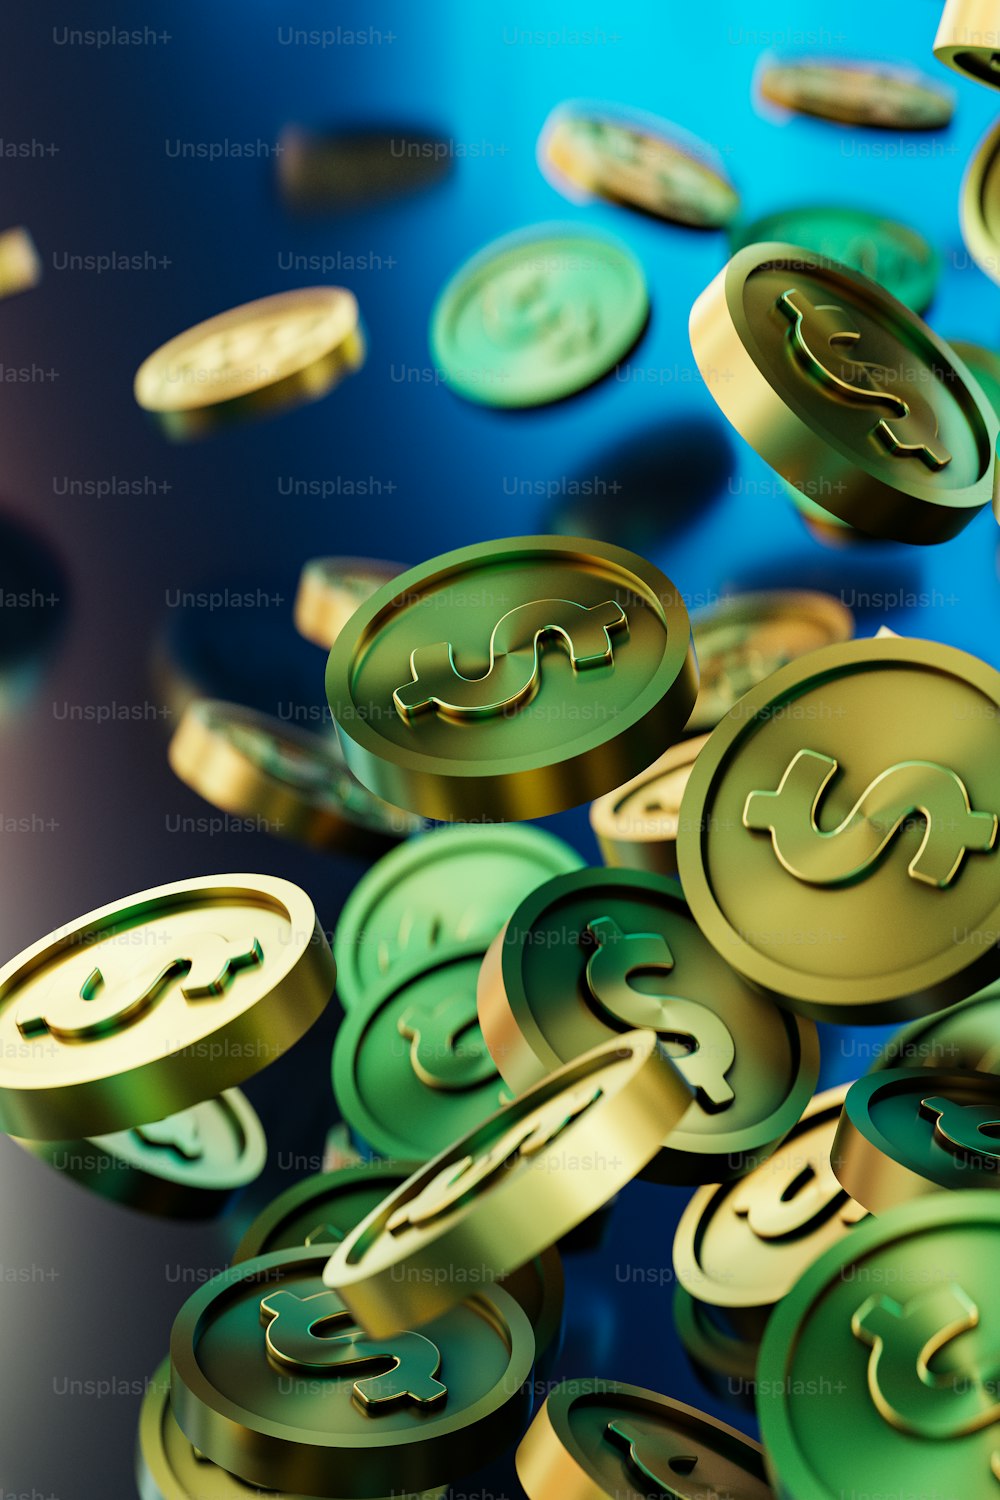 Ein Haufen Gold- und Grüngeldmünzen